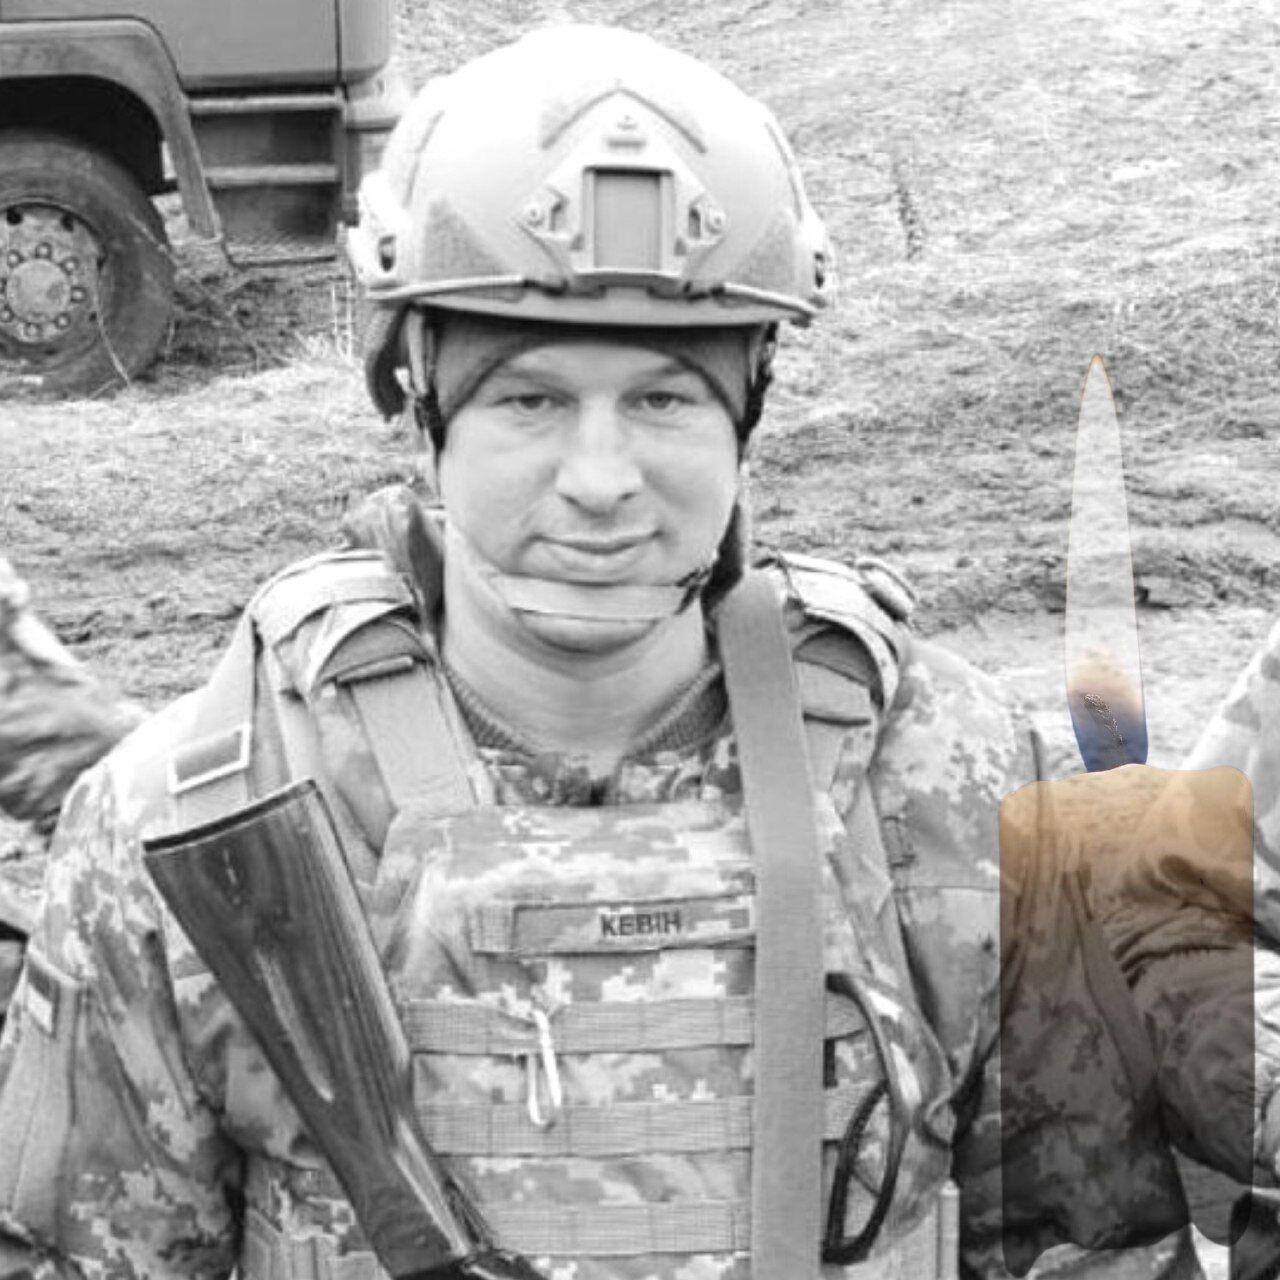 Йому назавжди буде 39: у лікарні від отриманих поранень помер військовий із Київщини Віталій Задорожний. Фото